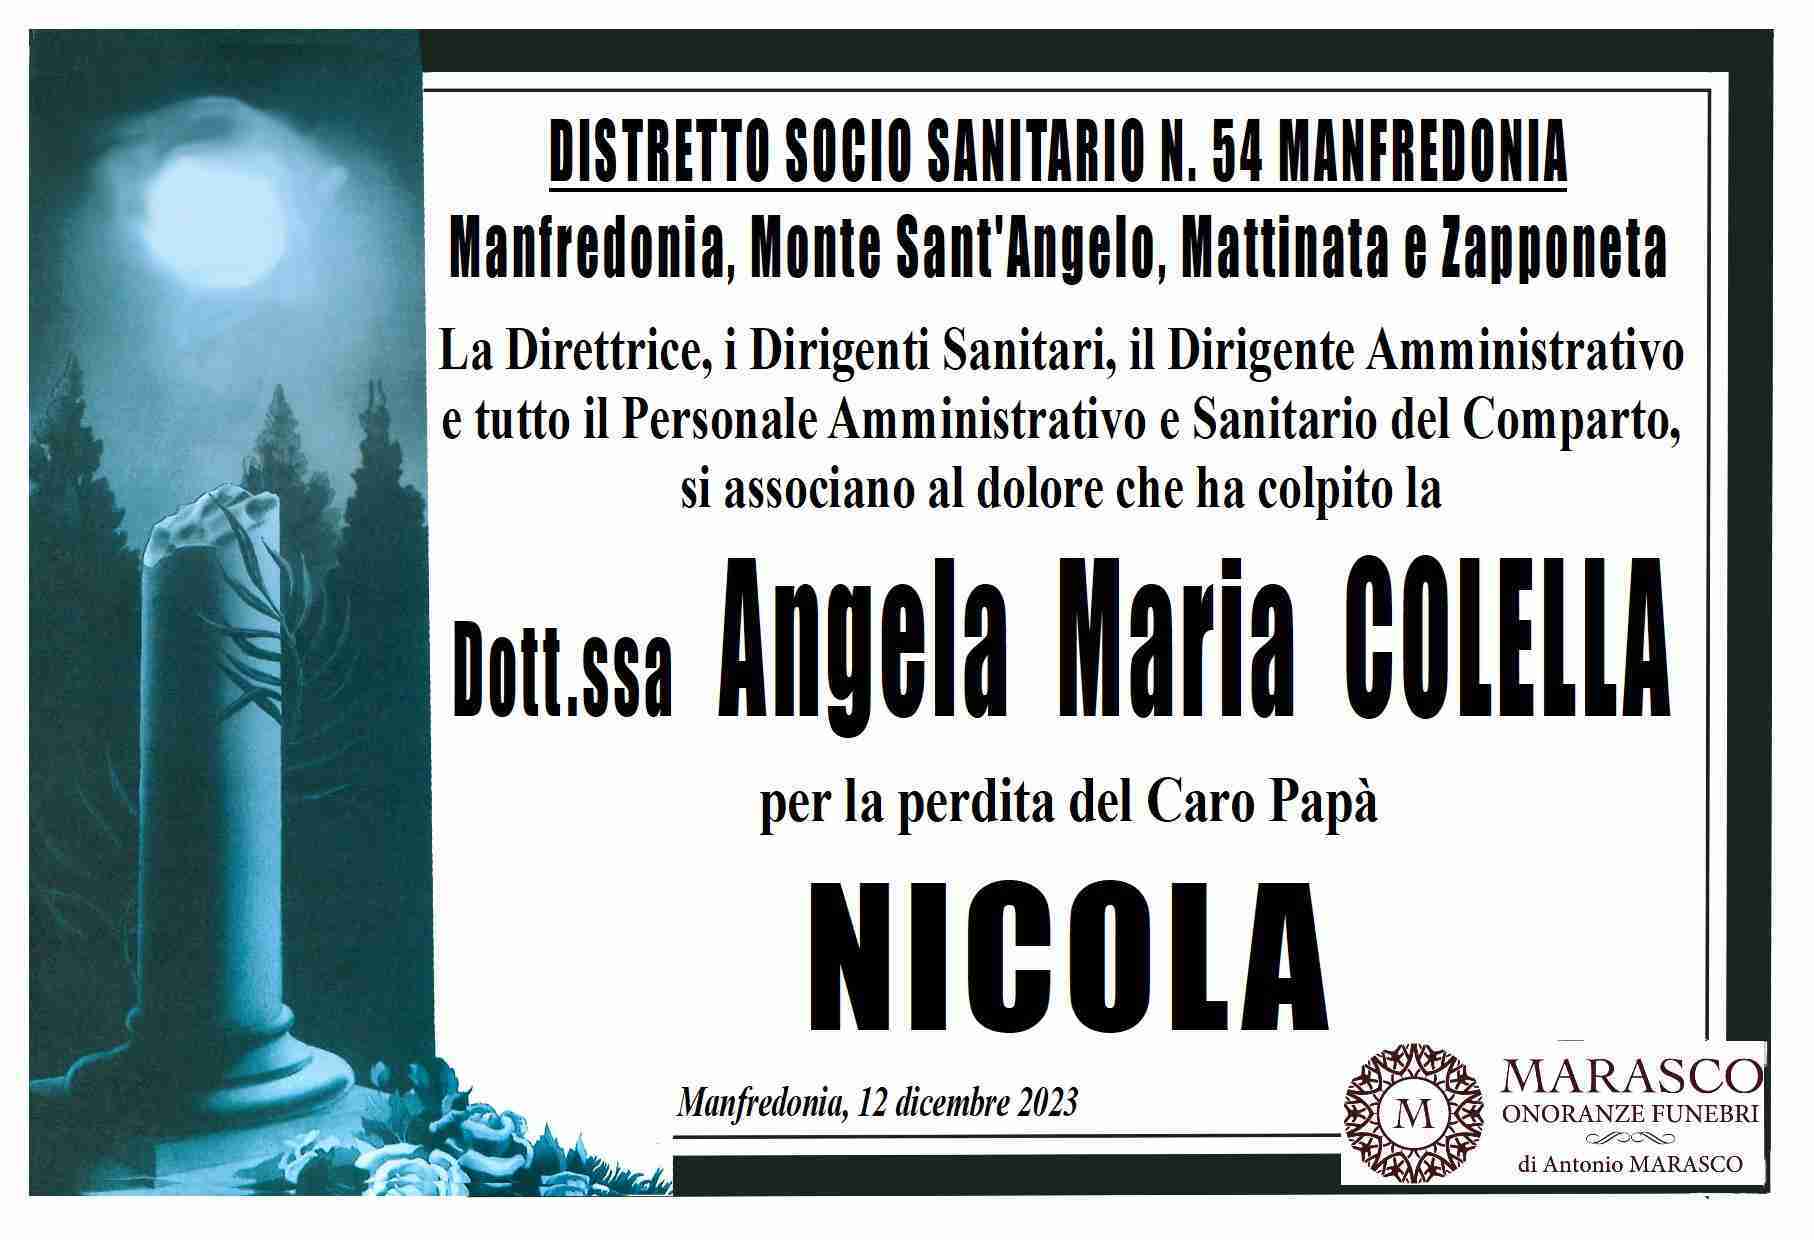 Nicola Colella